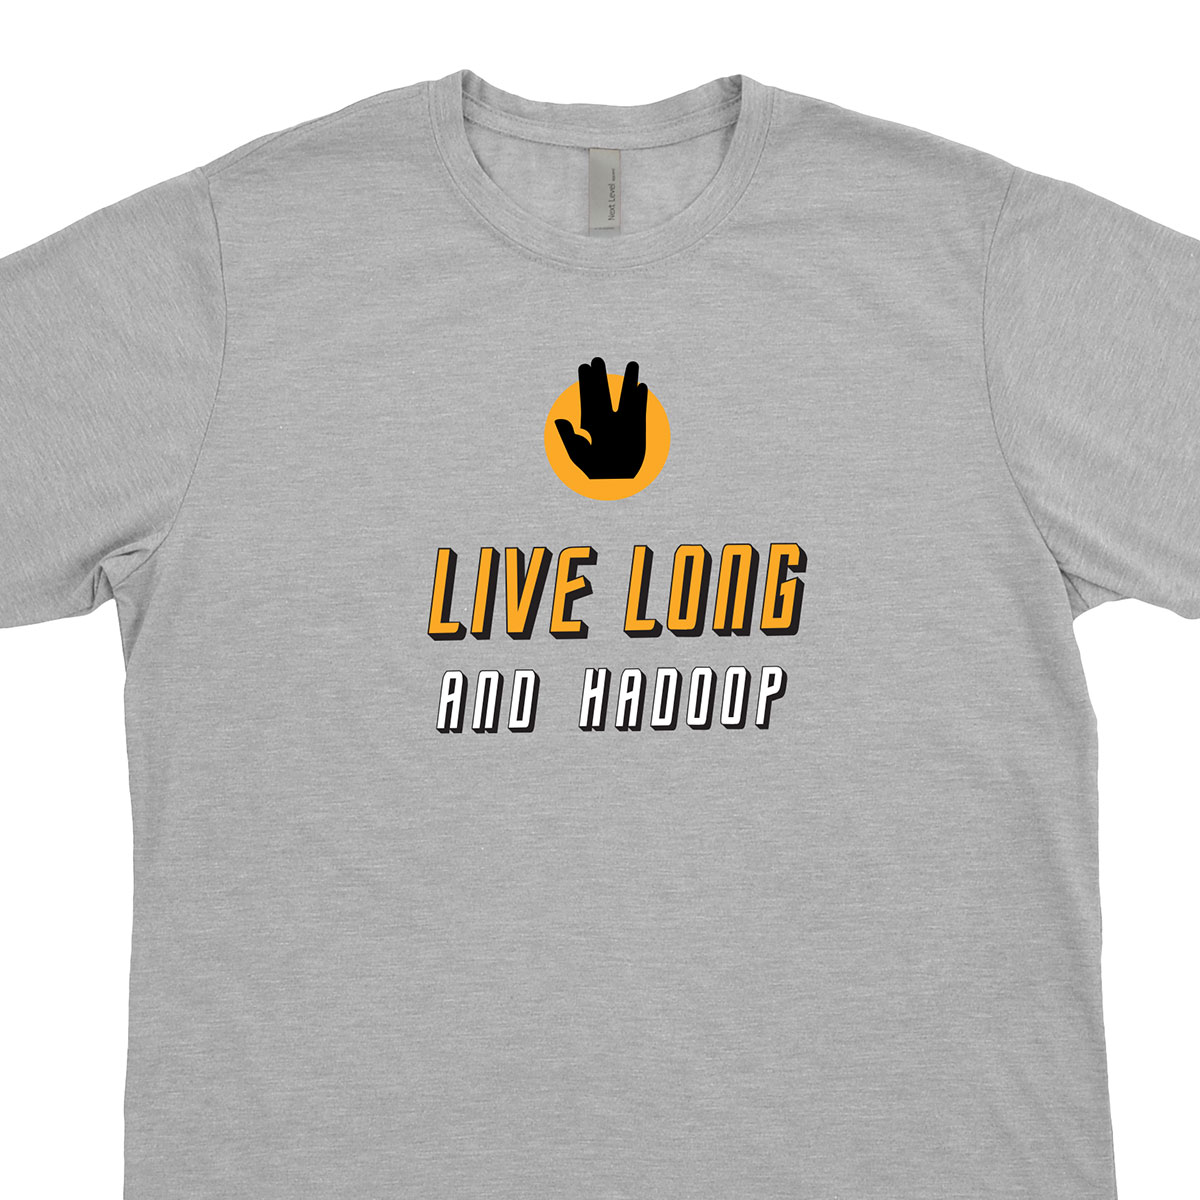 Hortonworks "Live Long and Hadoop" Spock T-Shirt Design